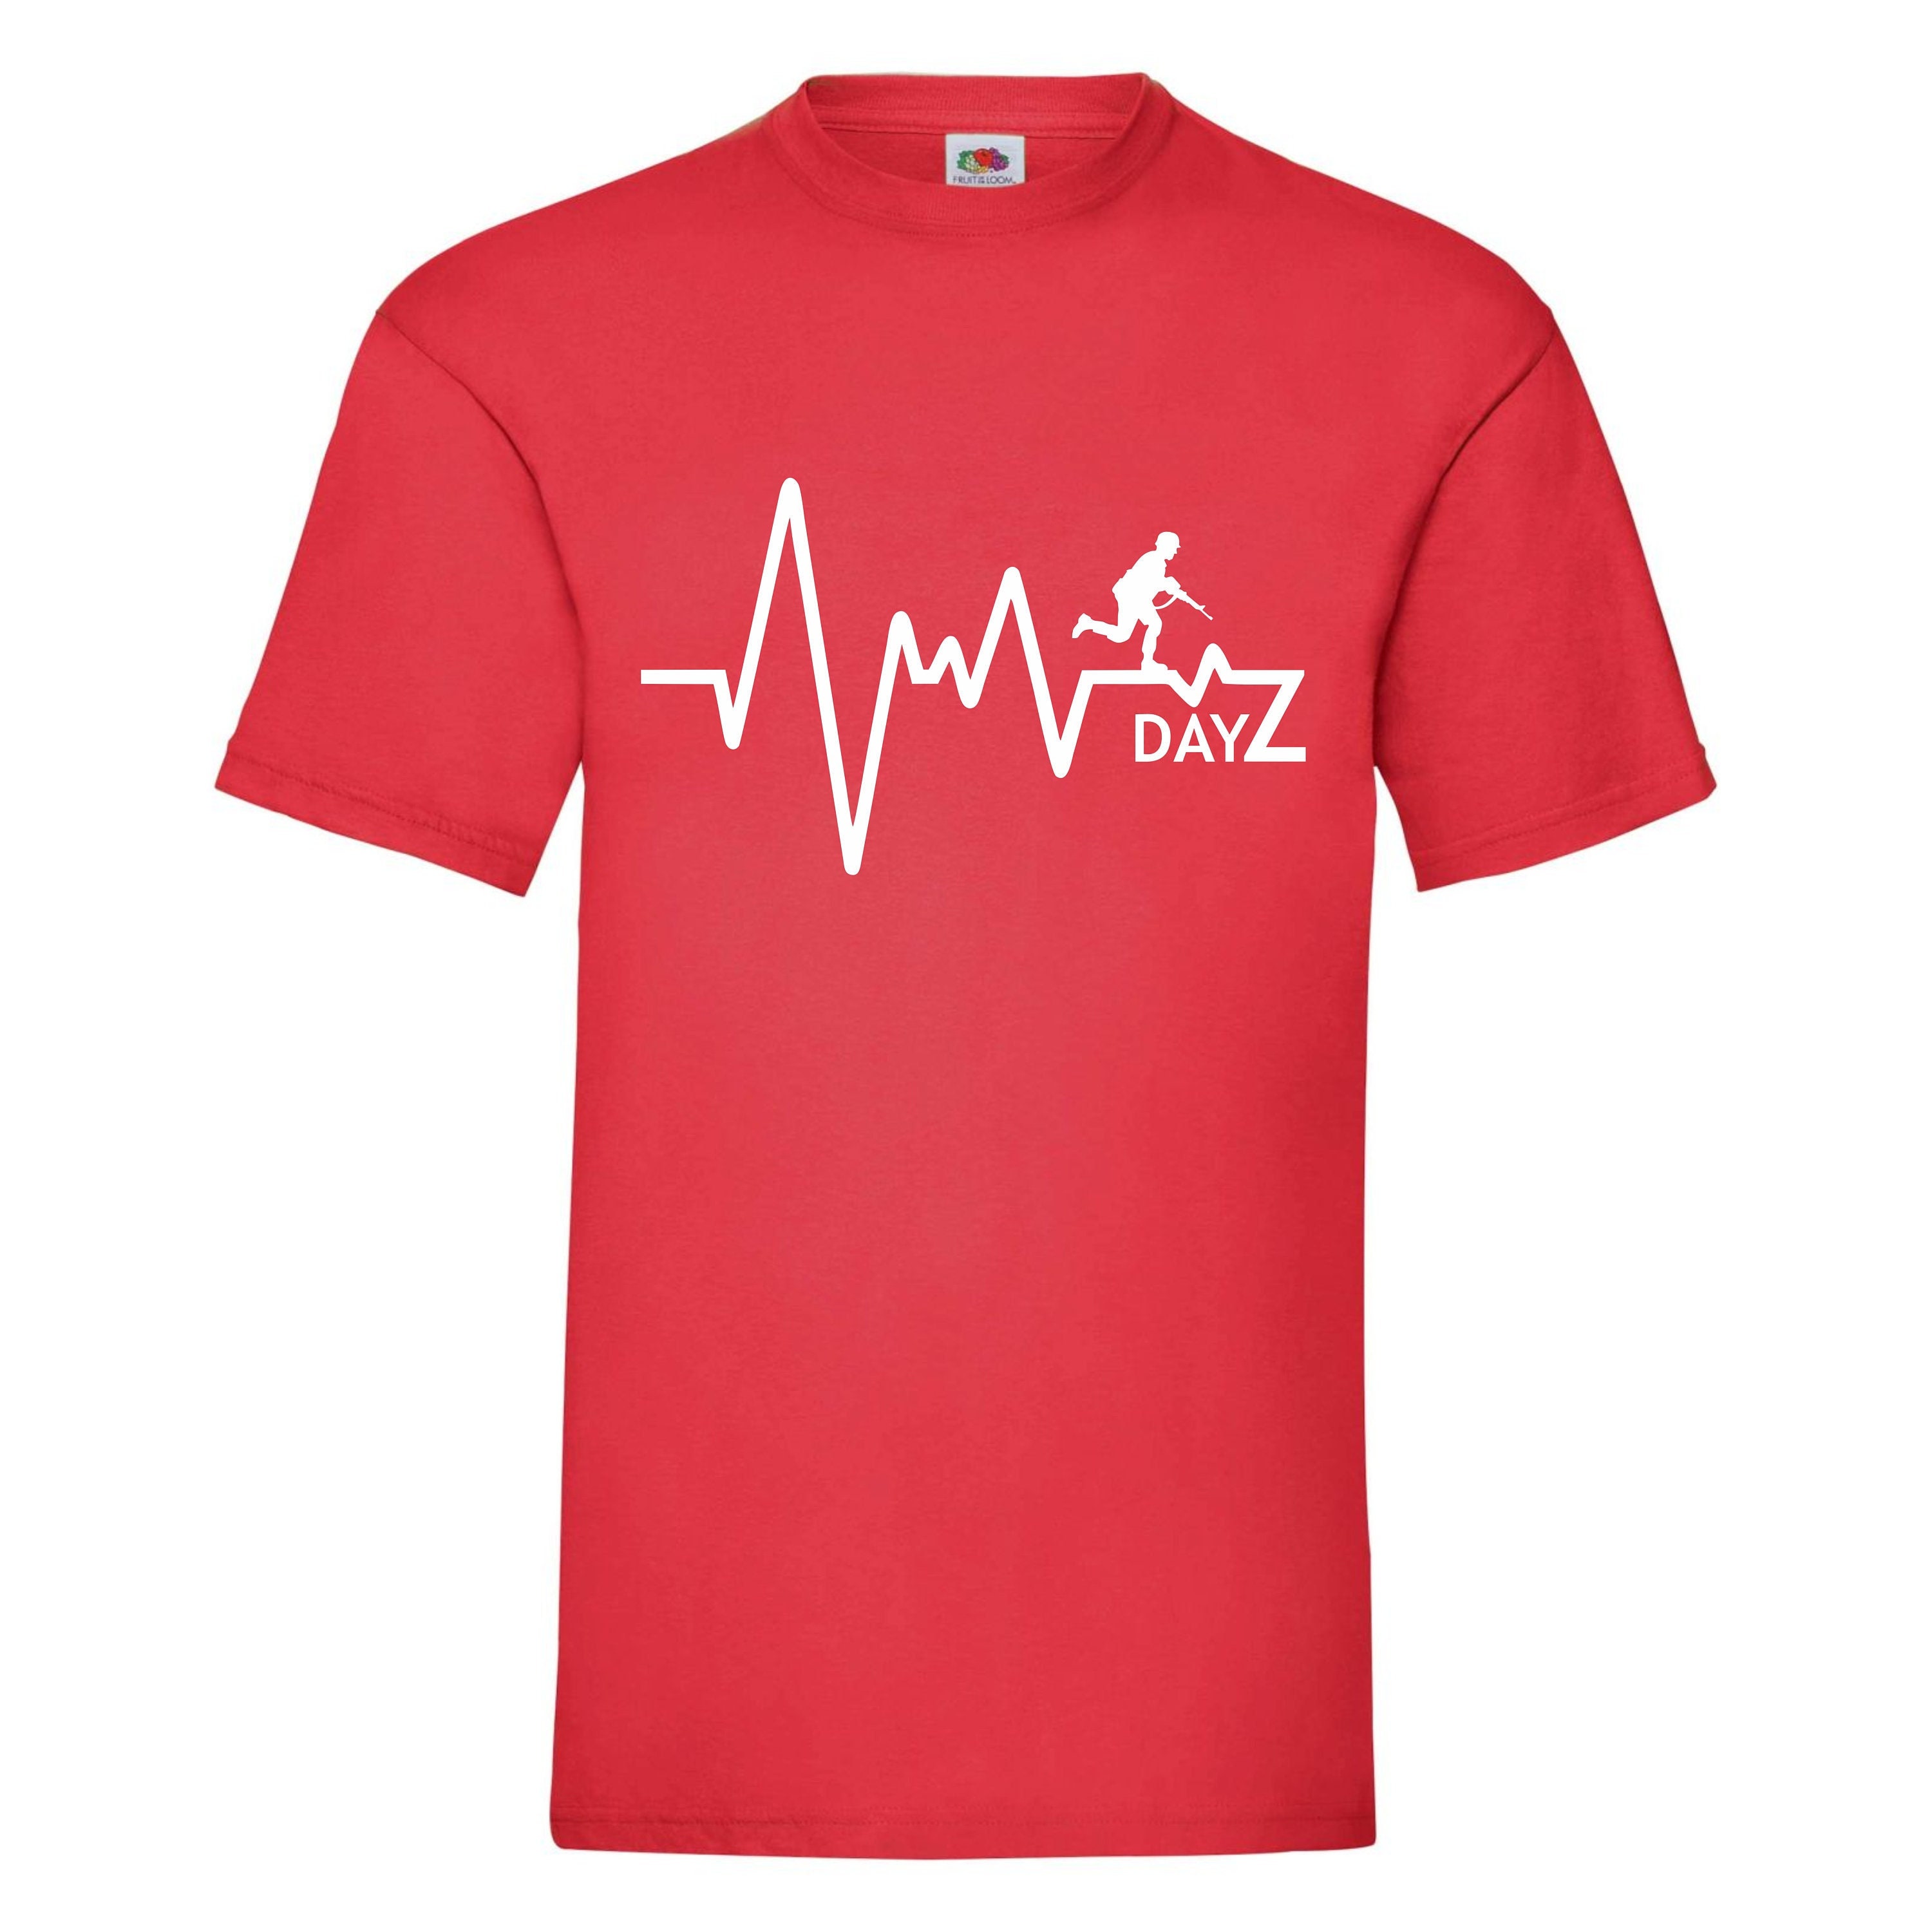 dayz tactical shirt - Compre dayz tactical shirt com envio grátis